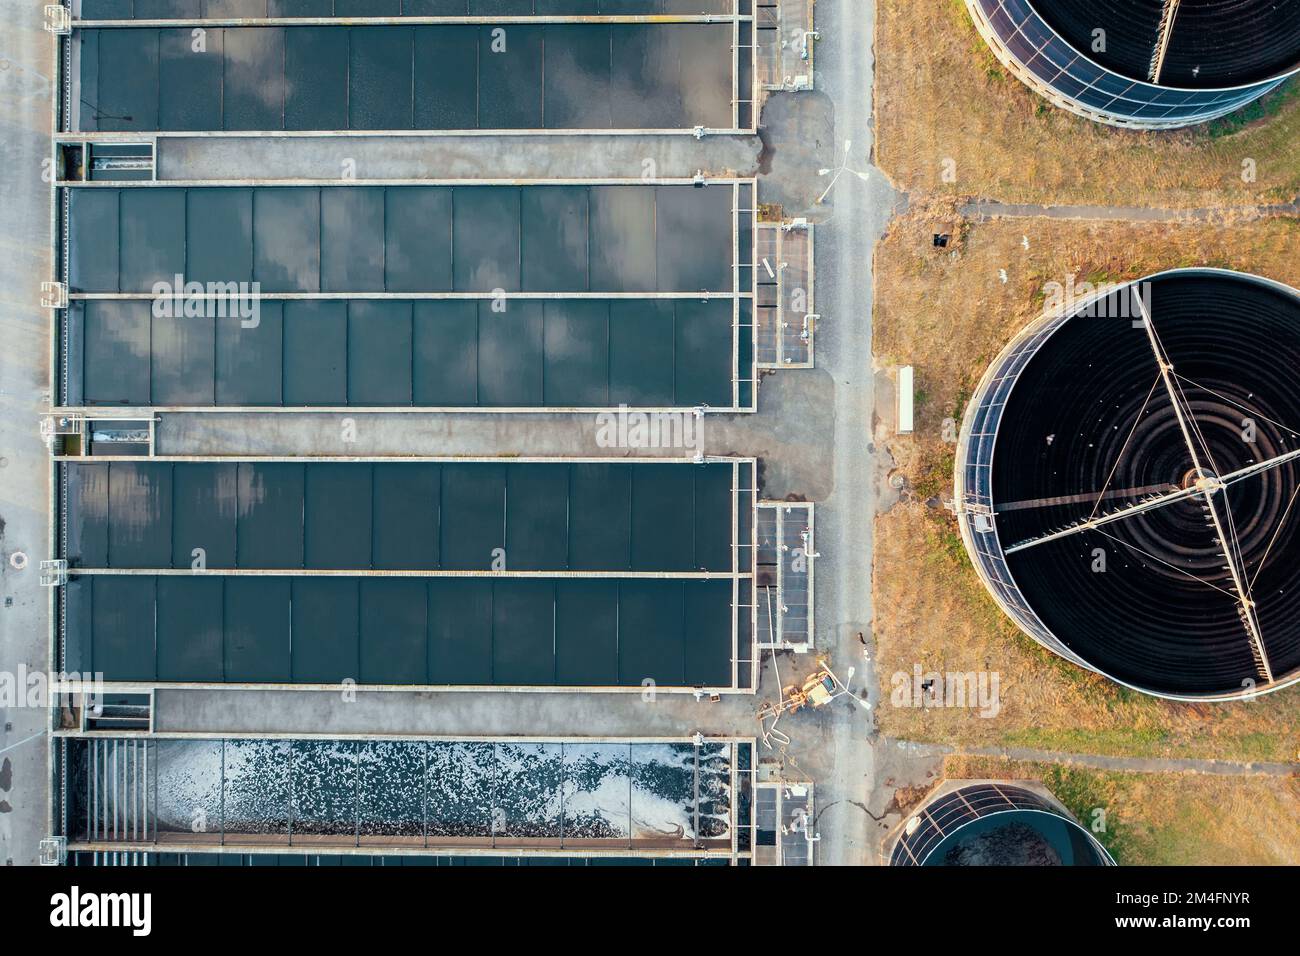 Impianto fognario, fognario e di trattamento delle acque reflue, vista aerea dal drone. Foto Stock